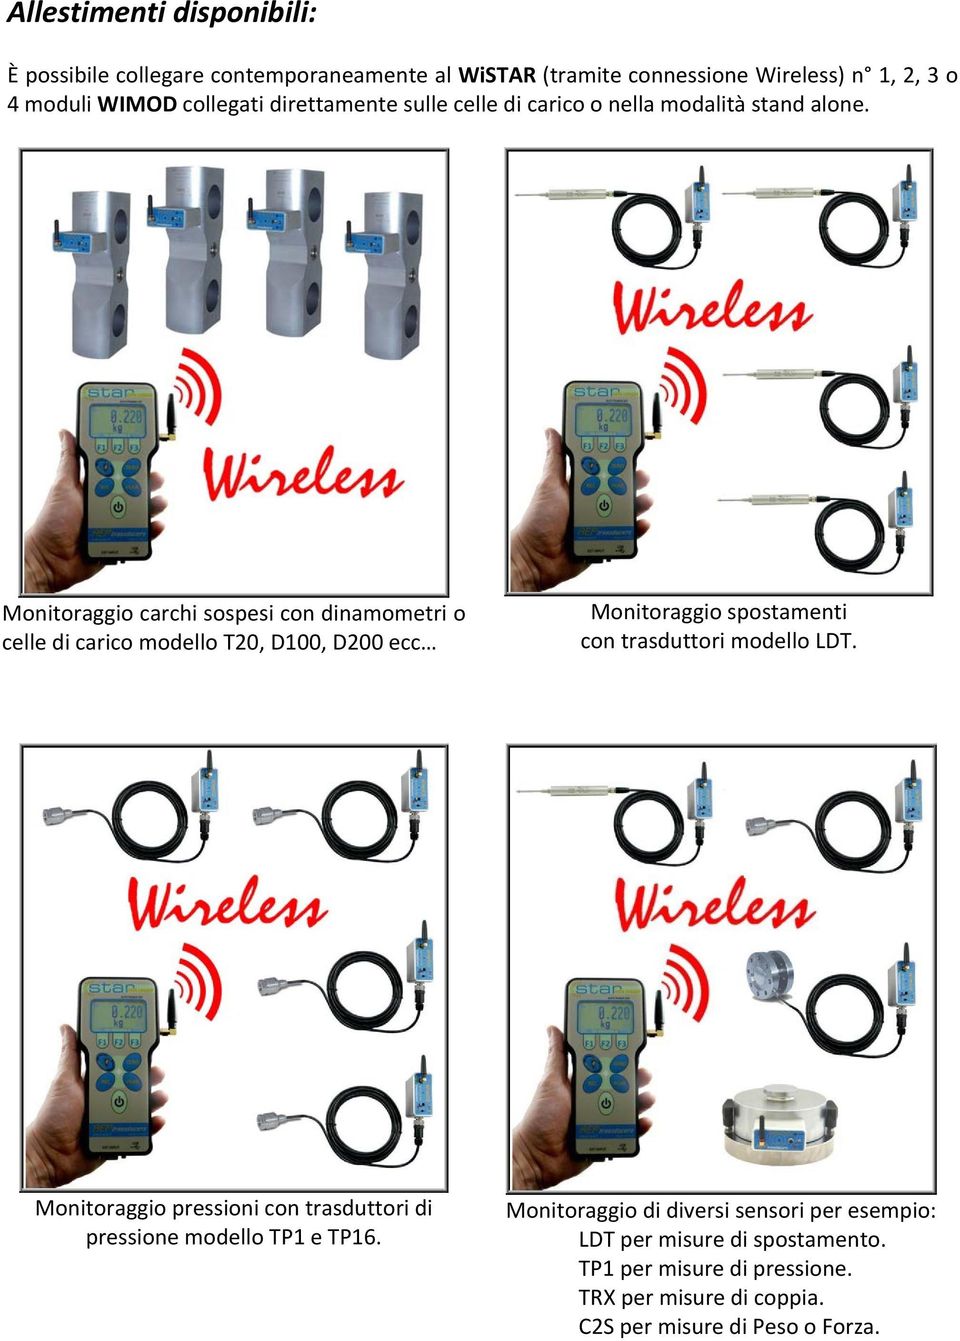 Monitoraggio carchi sospesi con dinamometri o celle di carico modello T20, D100, D200 ecc Monitoraggio spostamenti con trasduttori modello LDT.